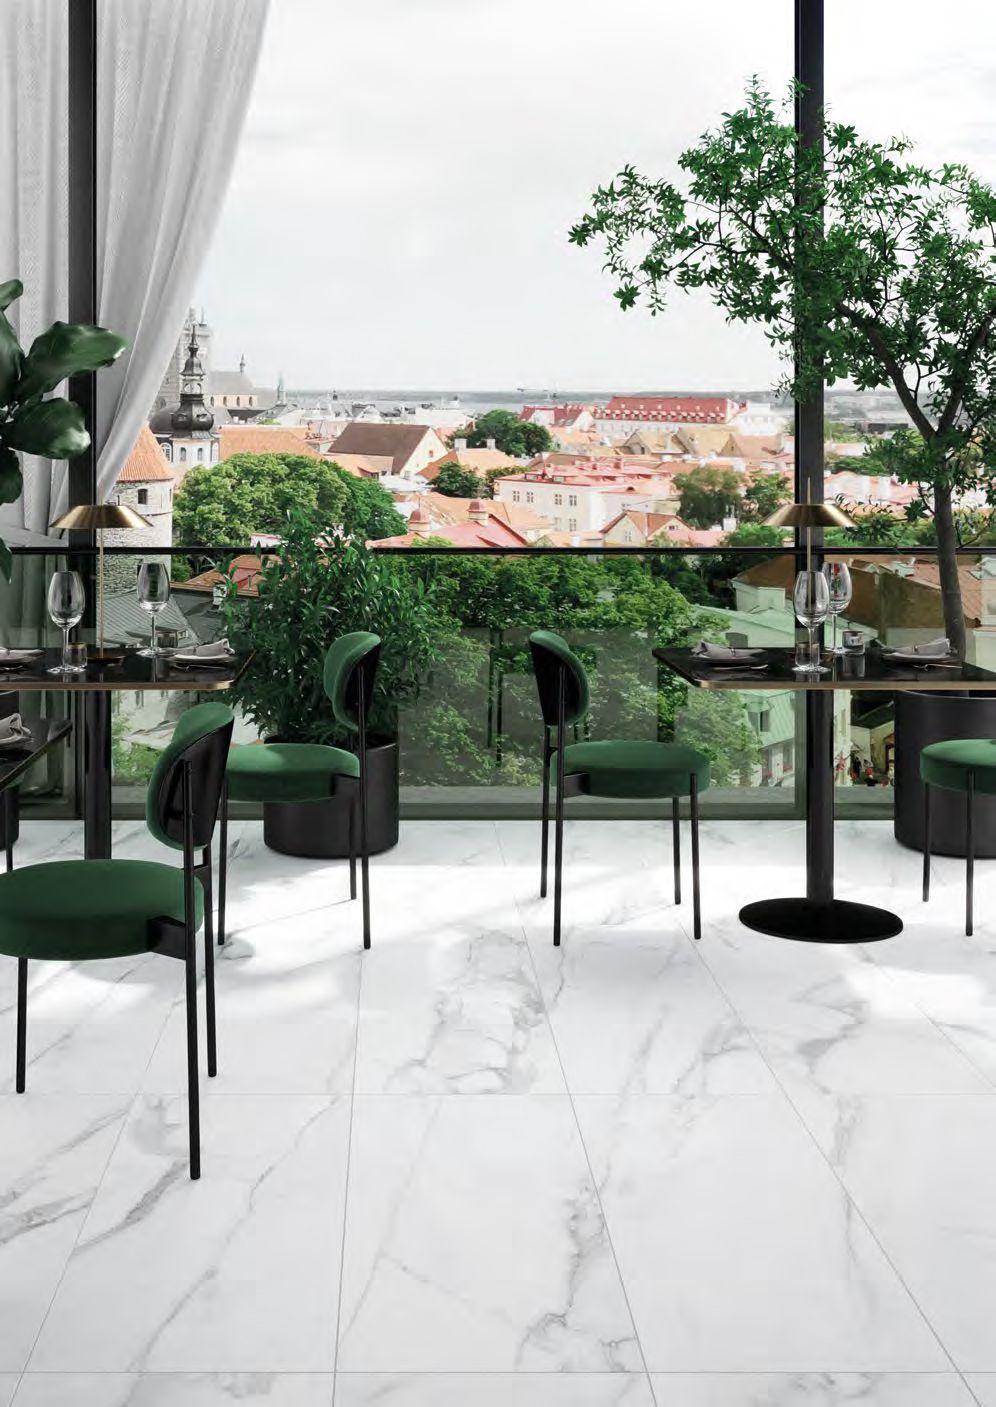 Carrara Weiss Sample 45x90cm Outdoor Restaurant Ivy Space